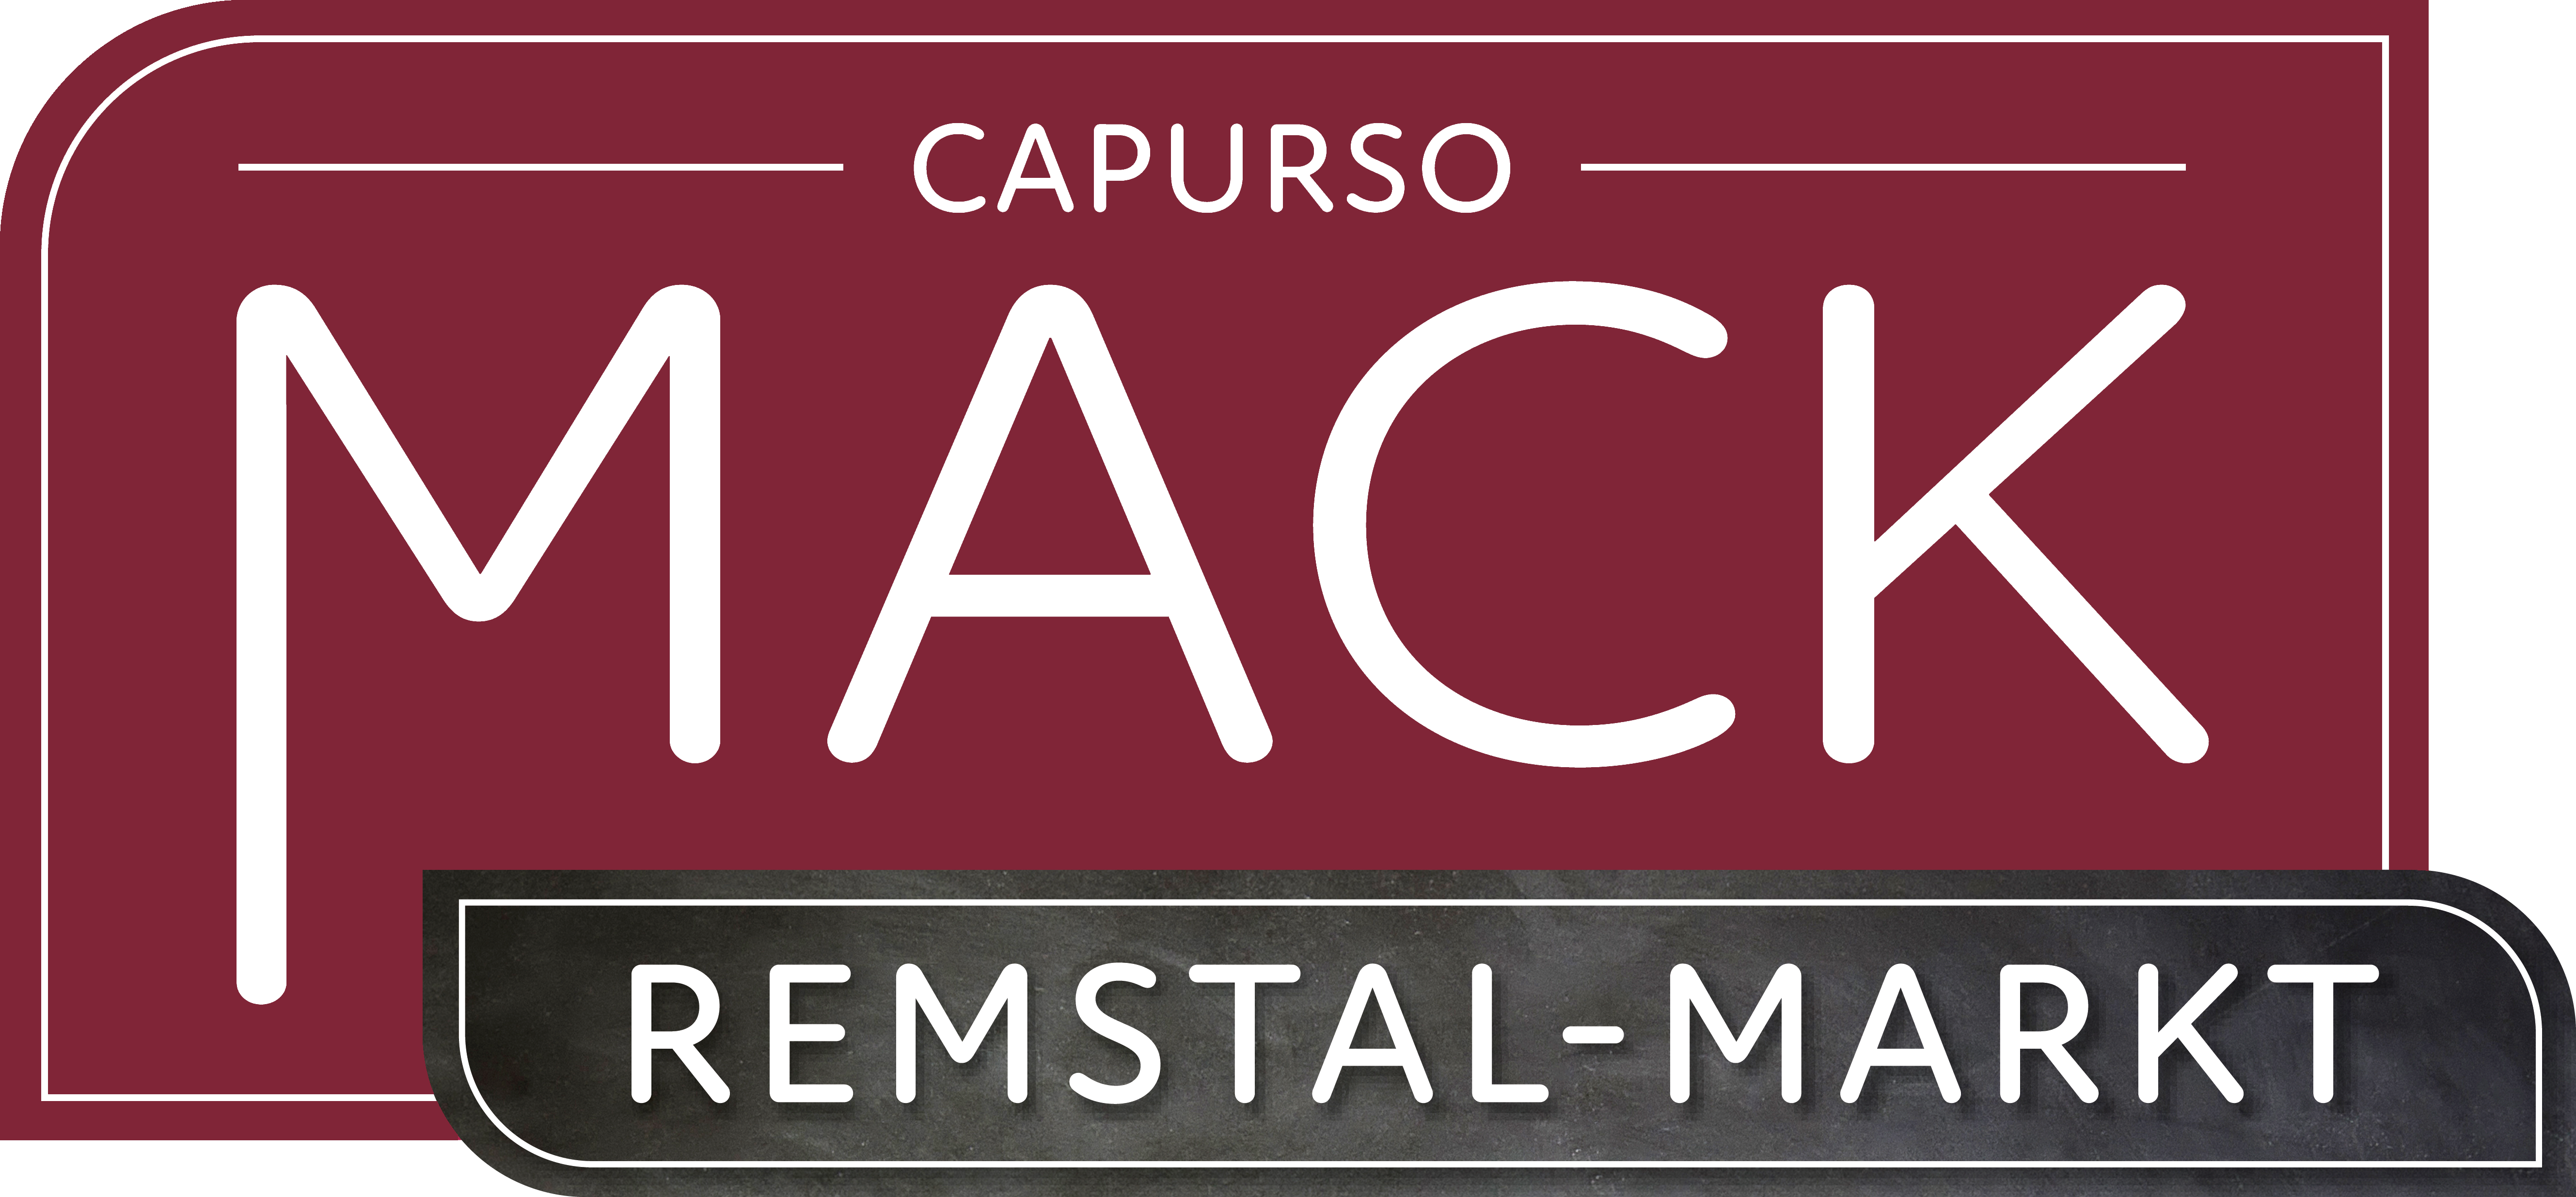 Mack Remstal-Markt Logo